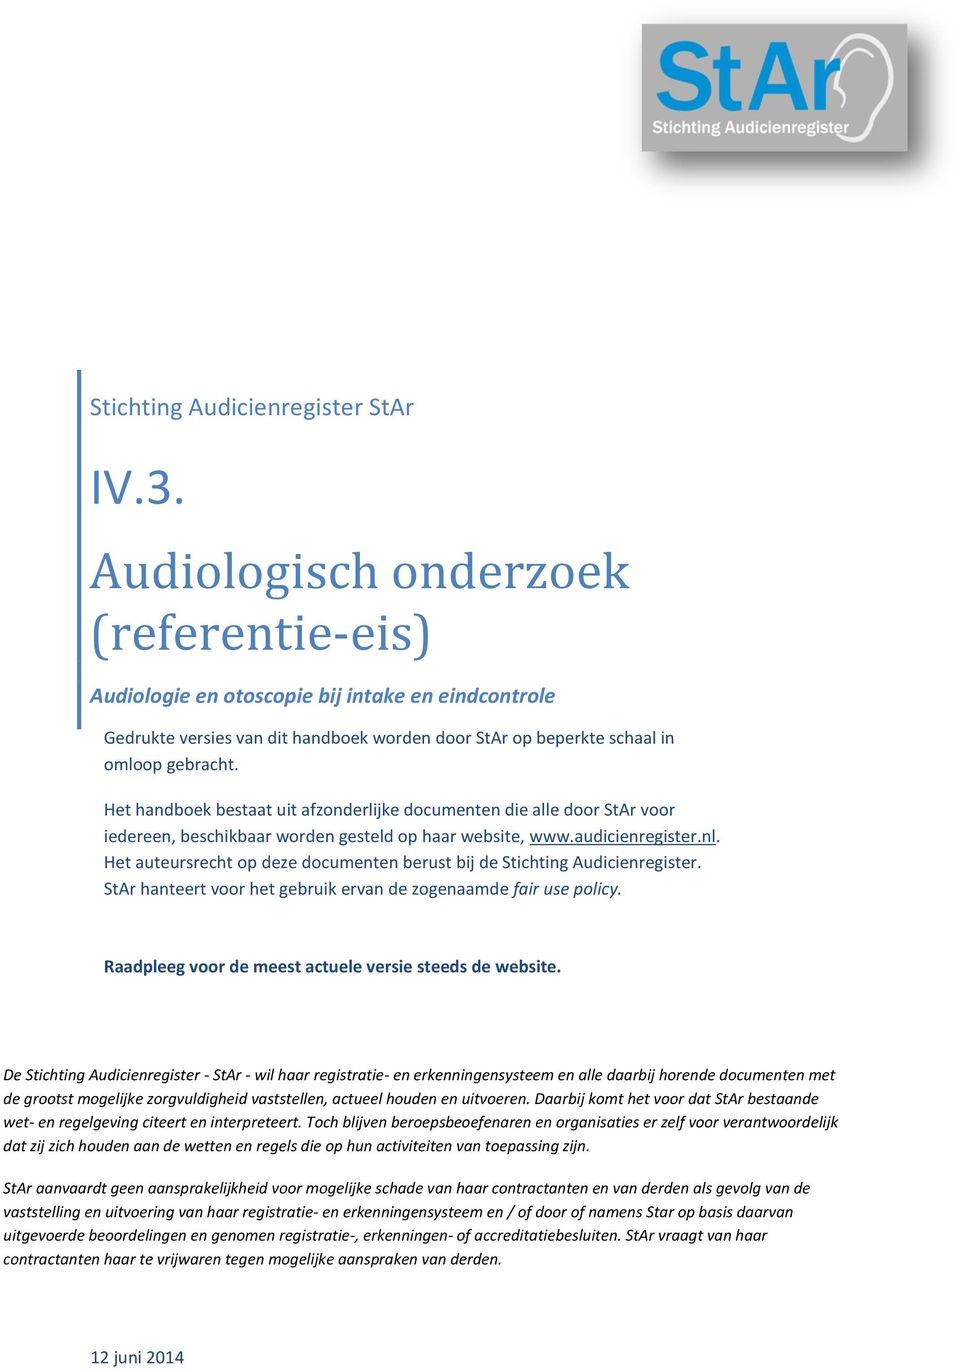 Het handboek bestaat uit afzonderlijke documenten die alle door StAr voor iedereen, beschikbaar worden gesteld op haar website, www.audicienregister.nl.